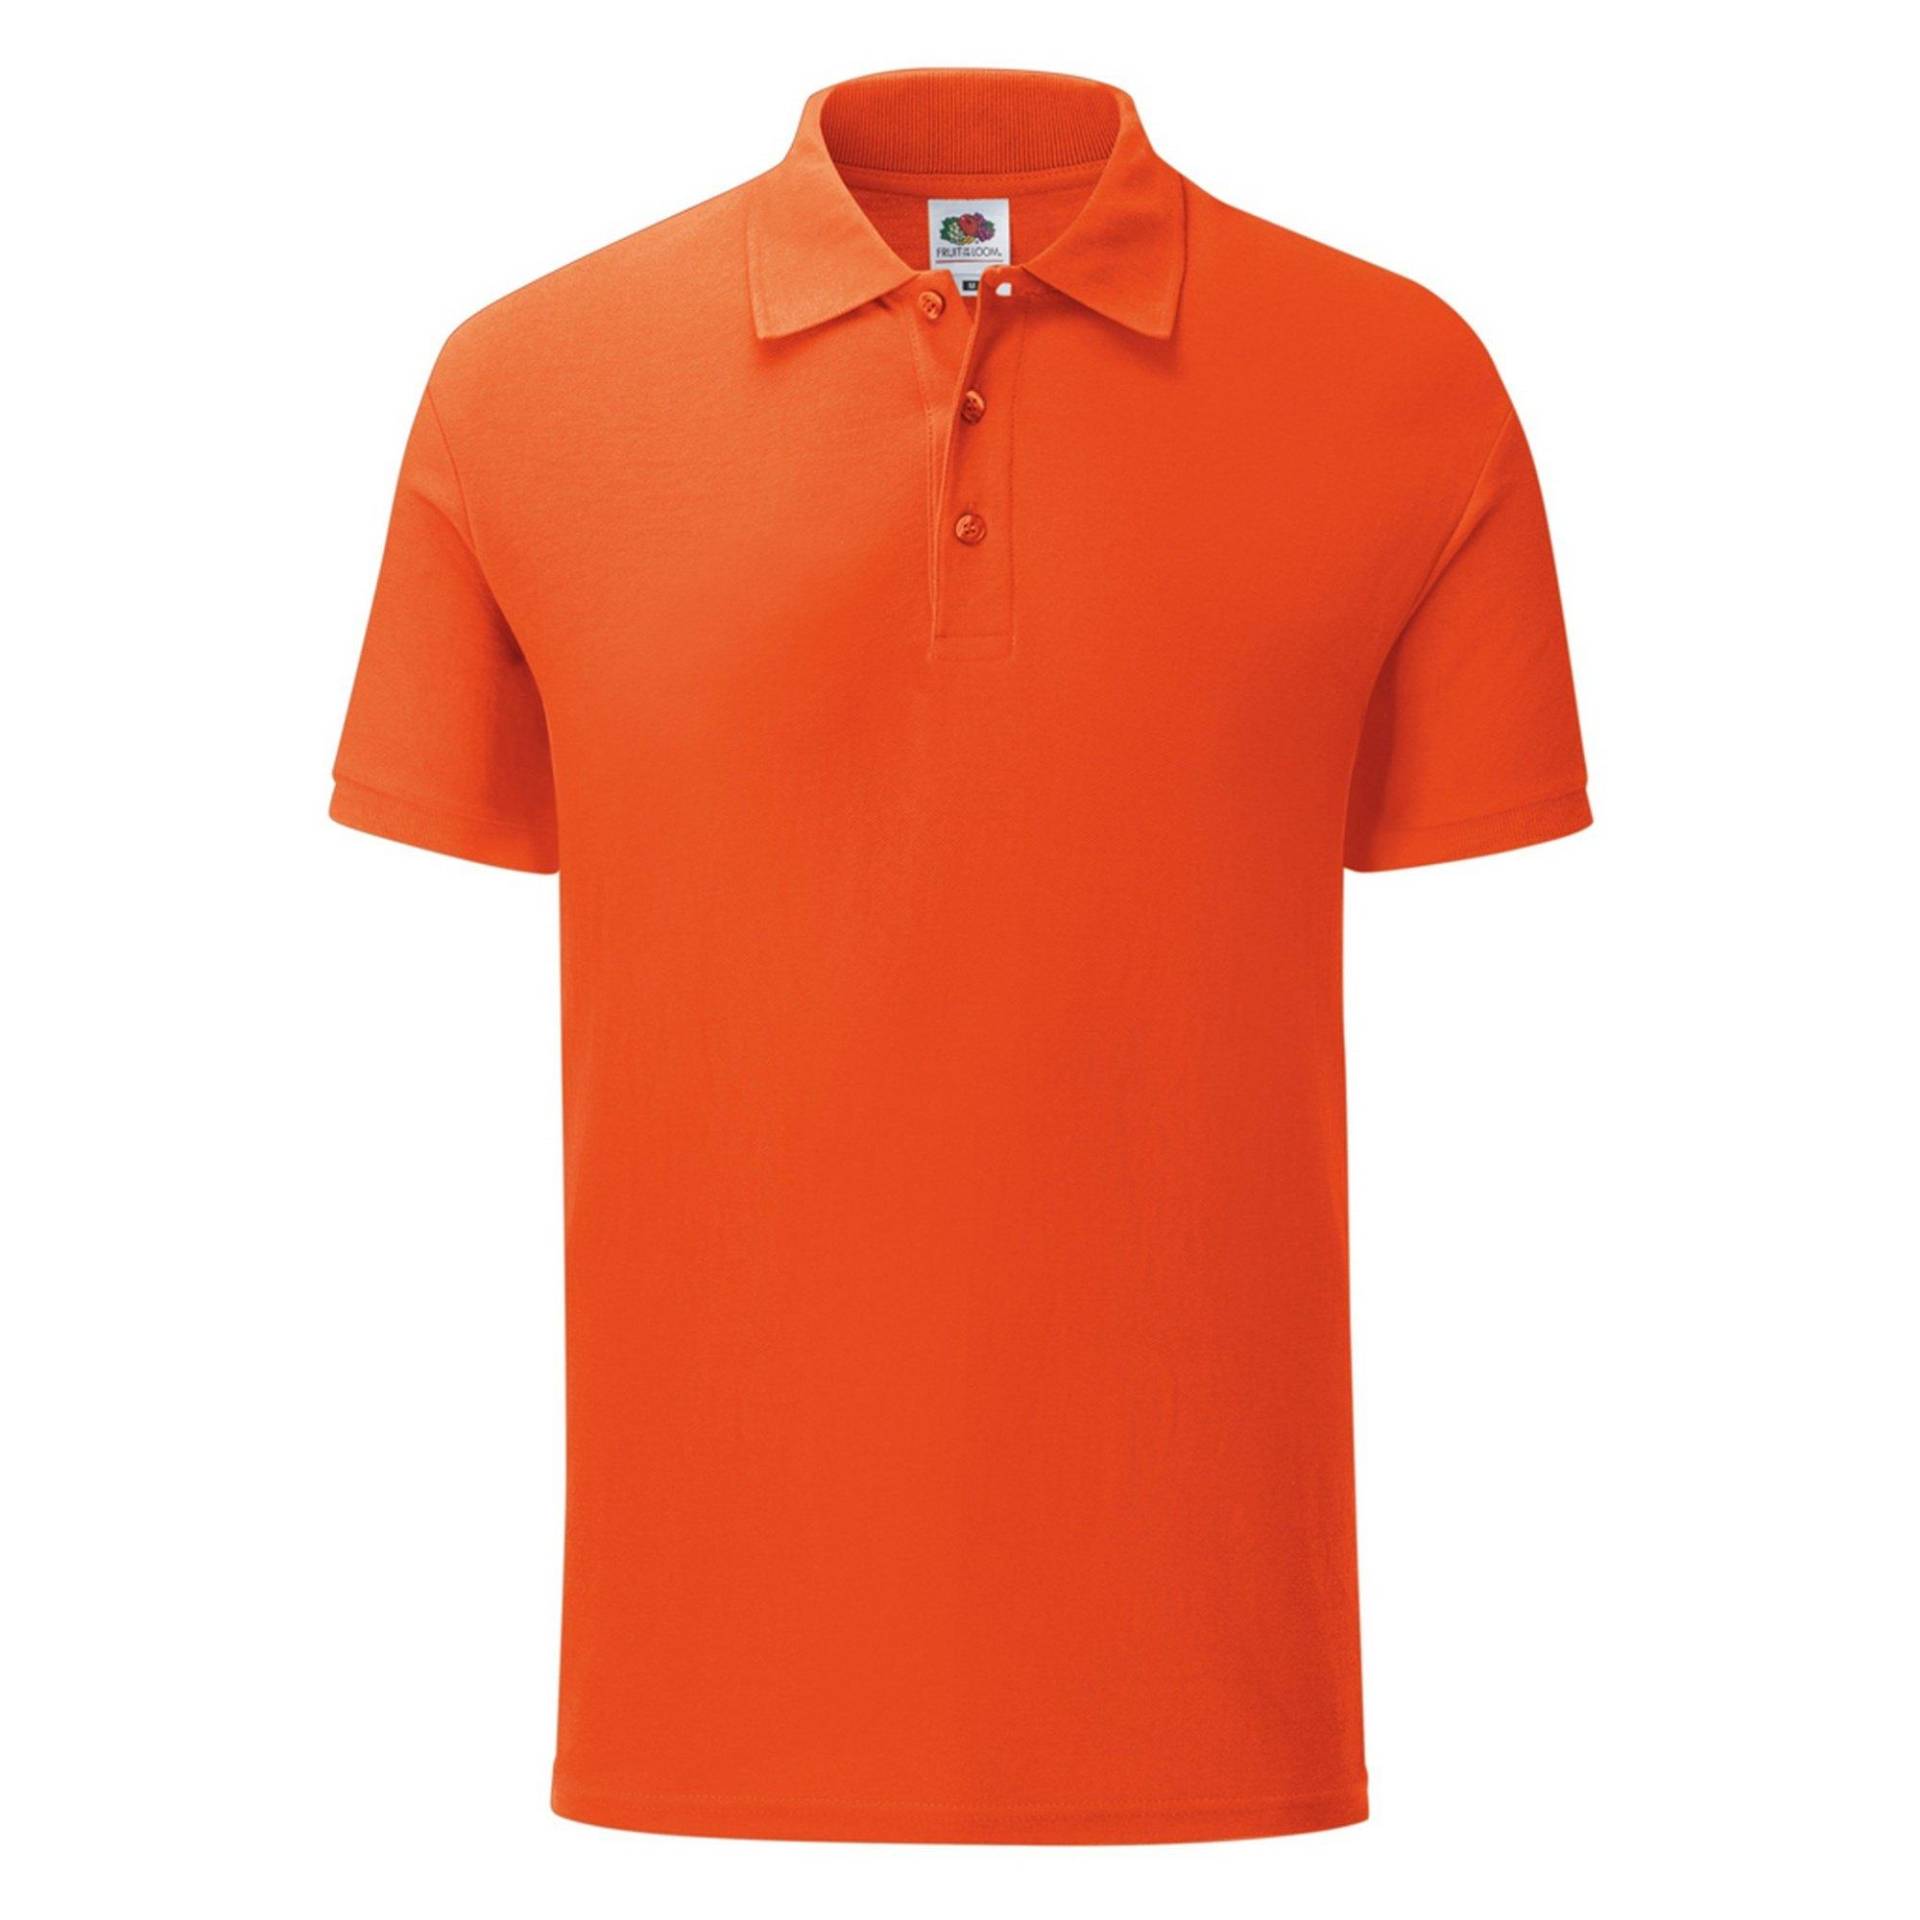 Iconic Pique Polo Shirt Herren Orange S von Fruit of the Loom